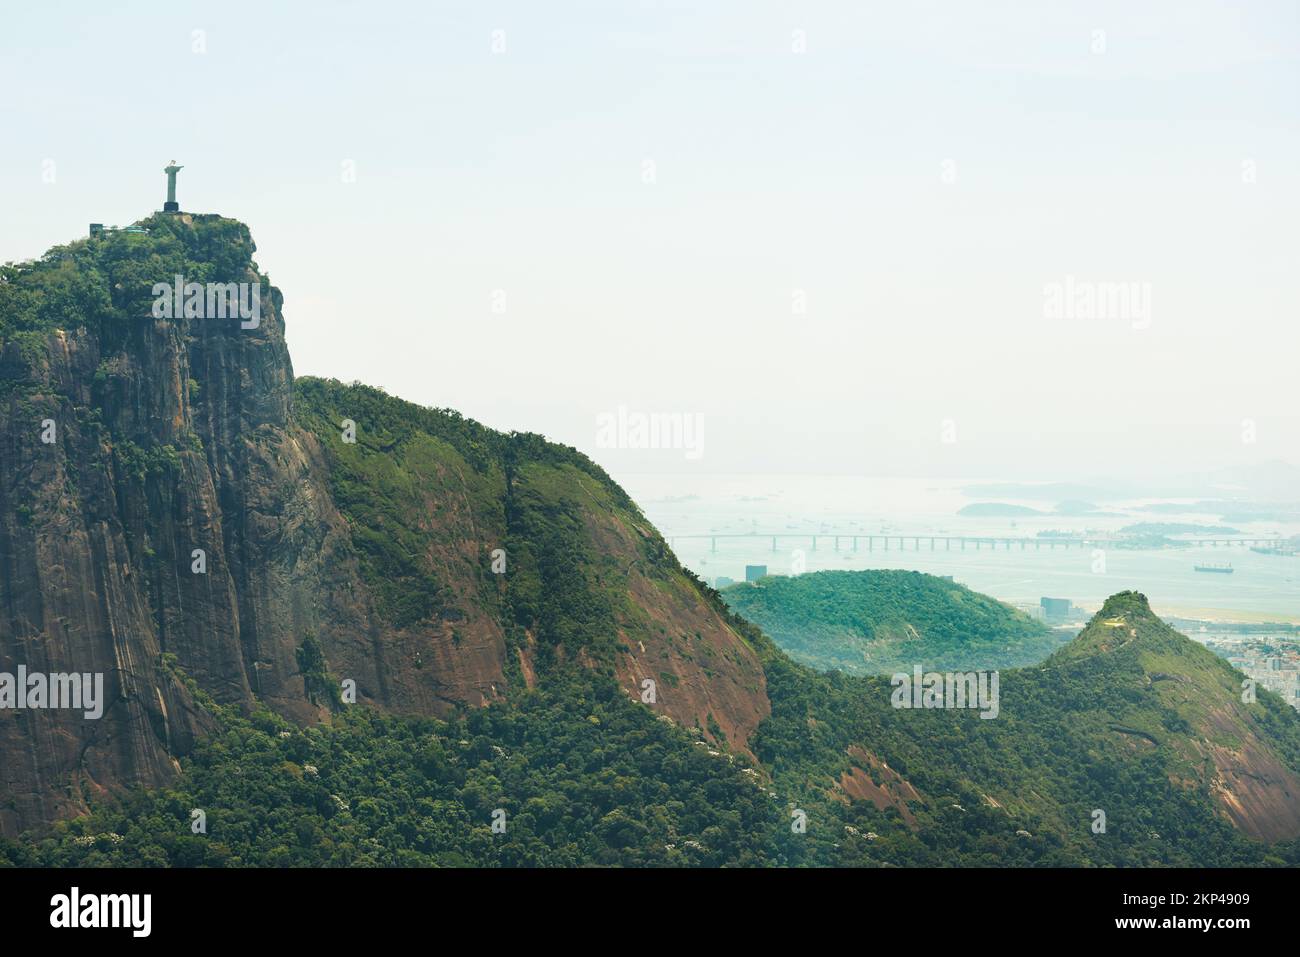 Es ist das Symbol des brasilianischen Christentums. Das Christus-Erlöser-Denkmal in Rio de Janeiro, Brasilien. Stockfoto